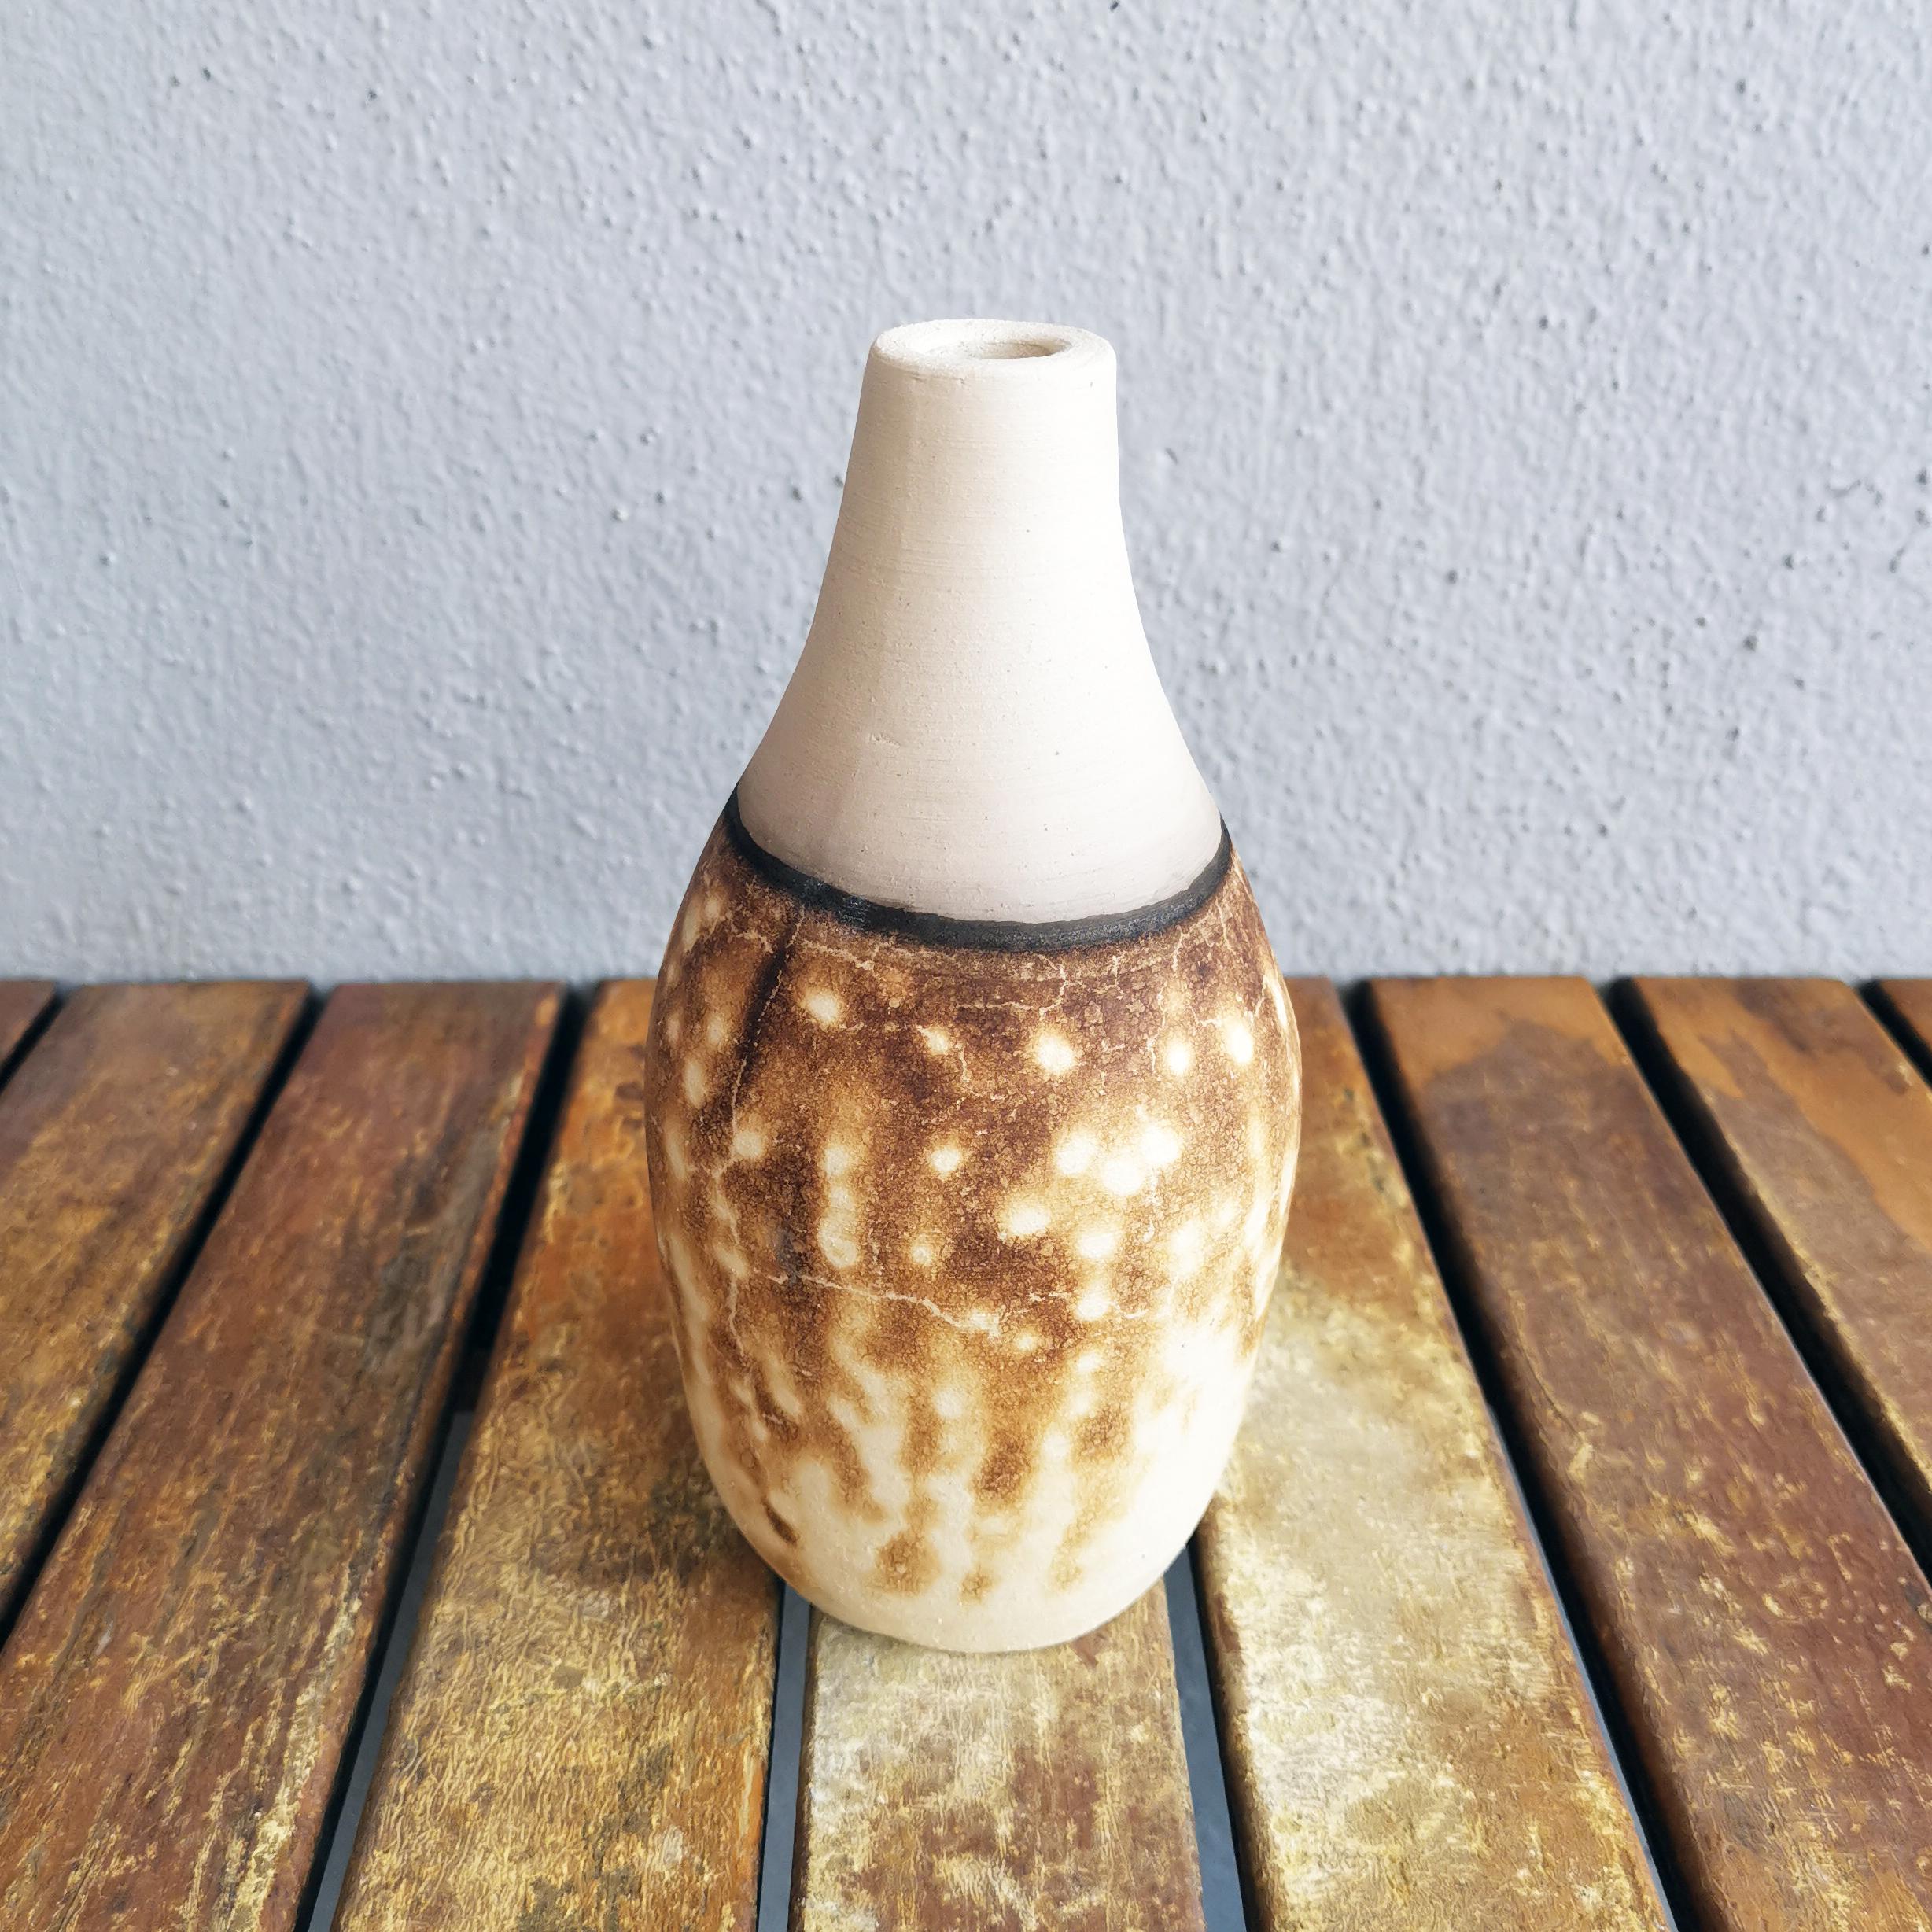 Natsu ( 夏 ) - (n) Sommer

Unsere Vase Natsu ist fast wie eine Limonadenflasche geformt und weckt Erinnerungen an den Sommer, wenn es heiß ist und man am liebsten nur noch eiskalte Limonade trinken würde.

Dieses Stück würde sehr gut zu unserer